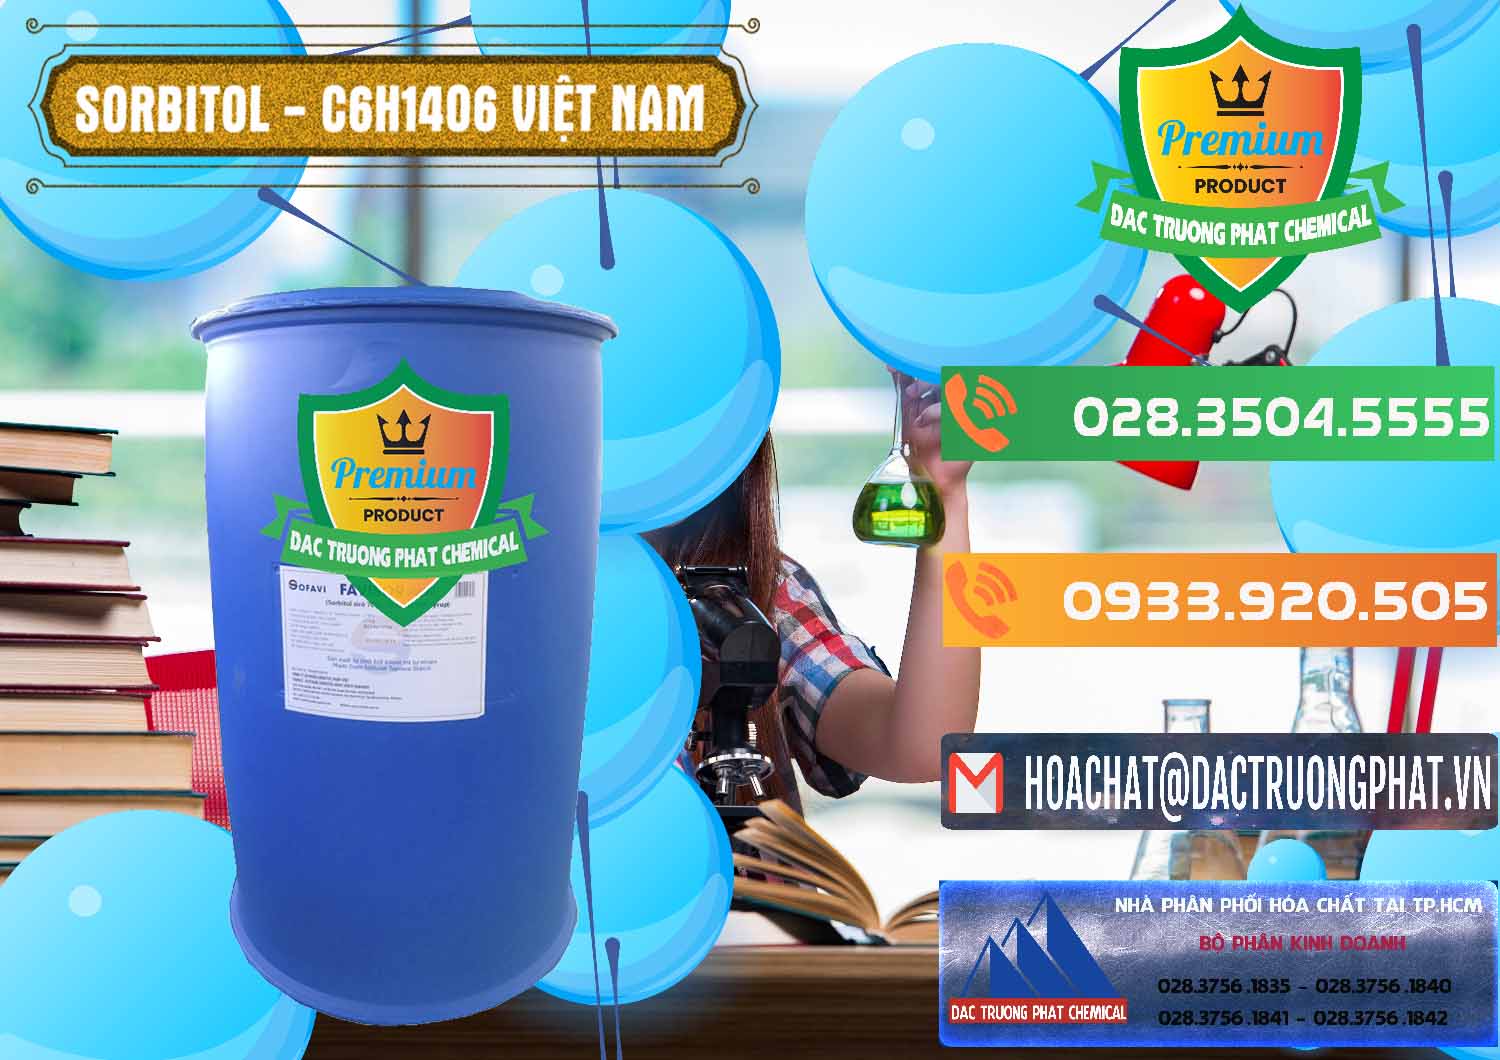 Cty phân phối và kinh doanh Sorbitol - C6H14O6 Lỏng 70% Food Grade Việt Nam - 0438 - Cty chuyên cung ứng - phân phối hóa chất tại TP.HCM - hoachatxulynuoc.com.vn